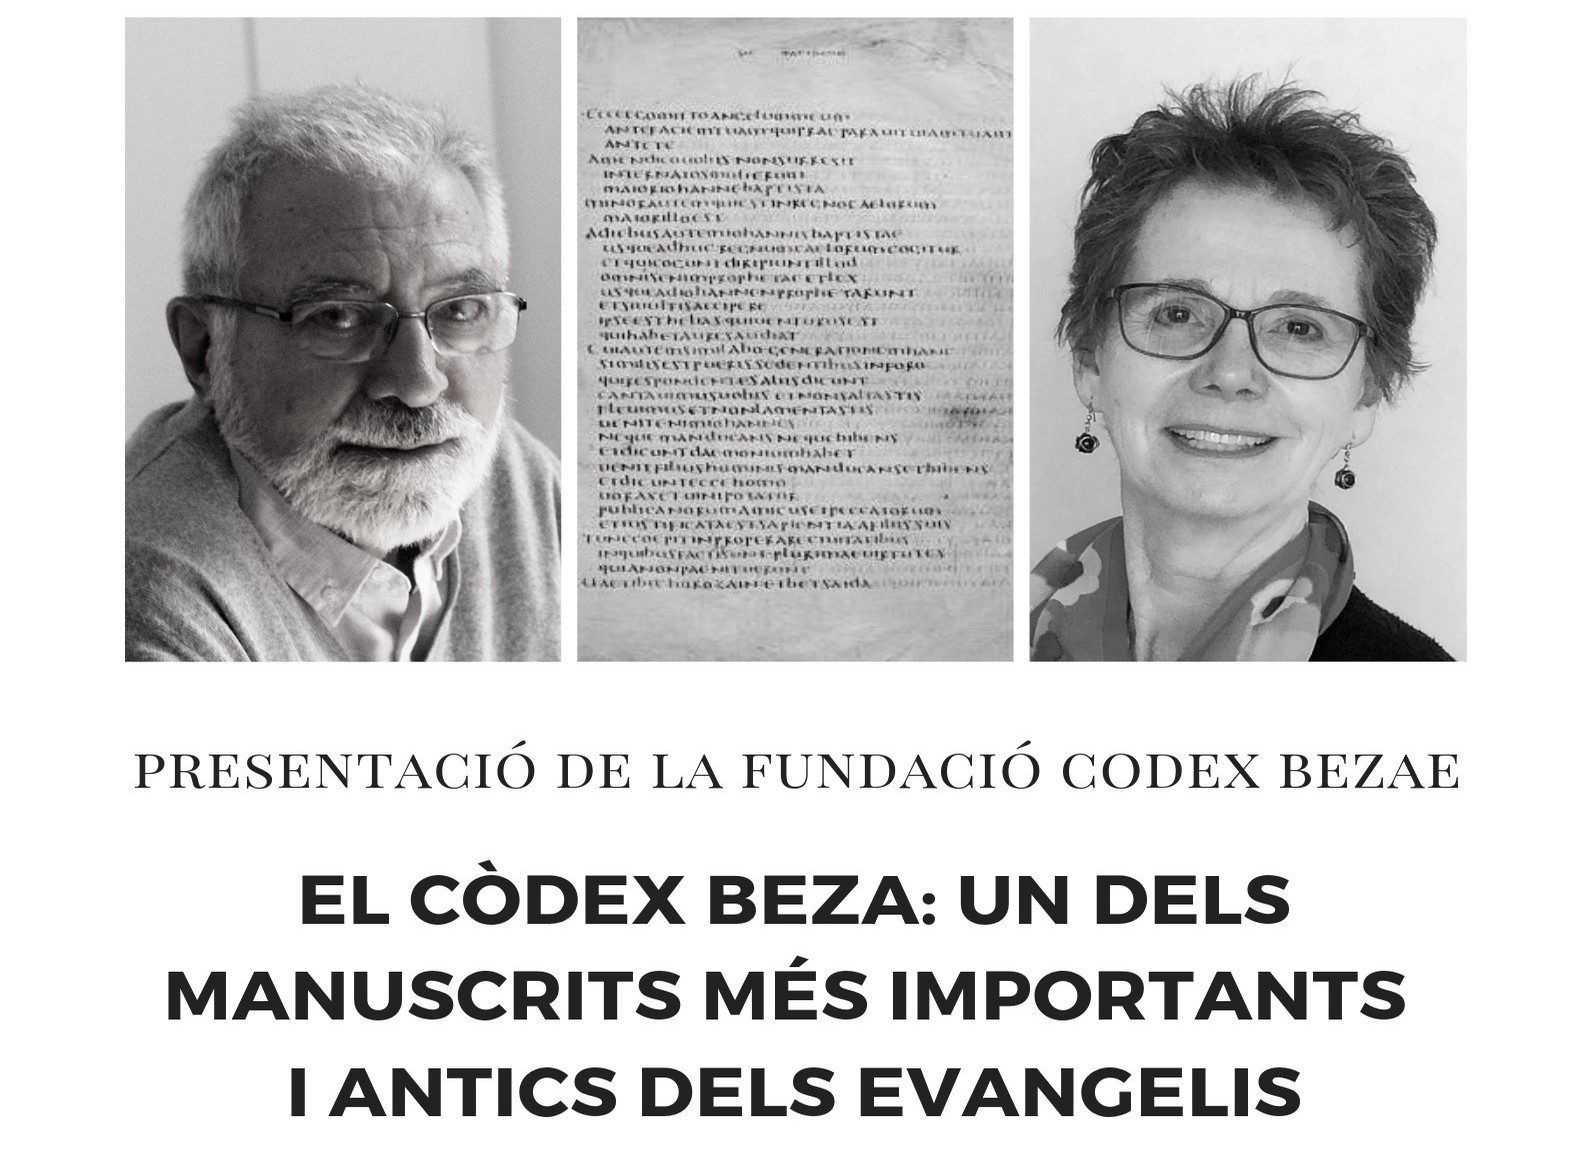 Xerrada sobre el ‘Codex Bezae’ i presentació de la seva Fundació